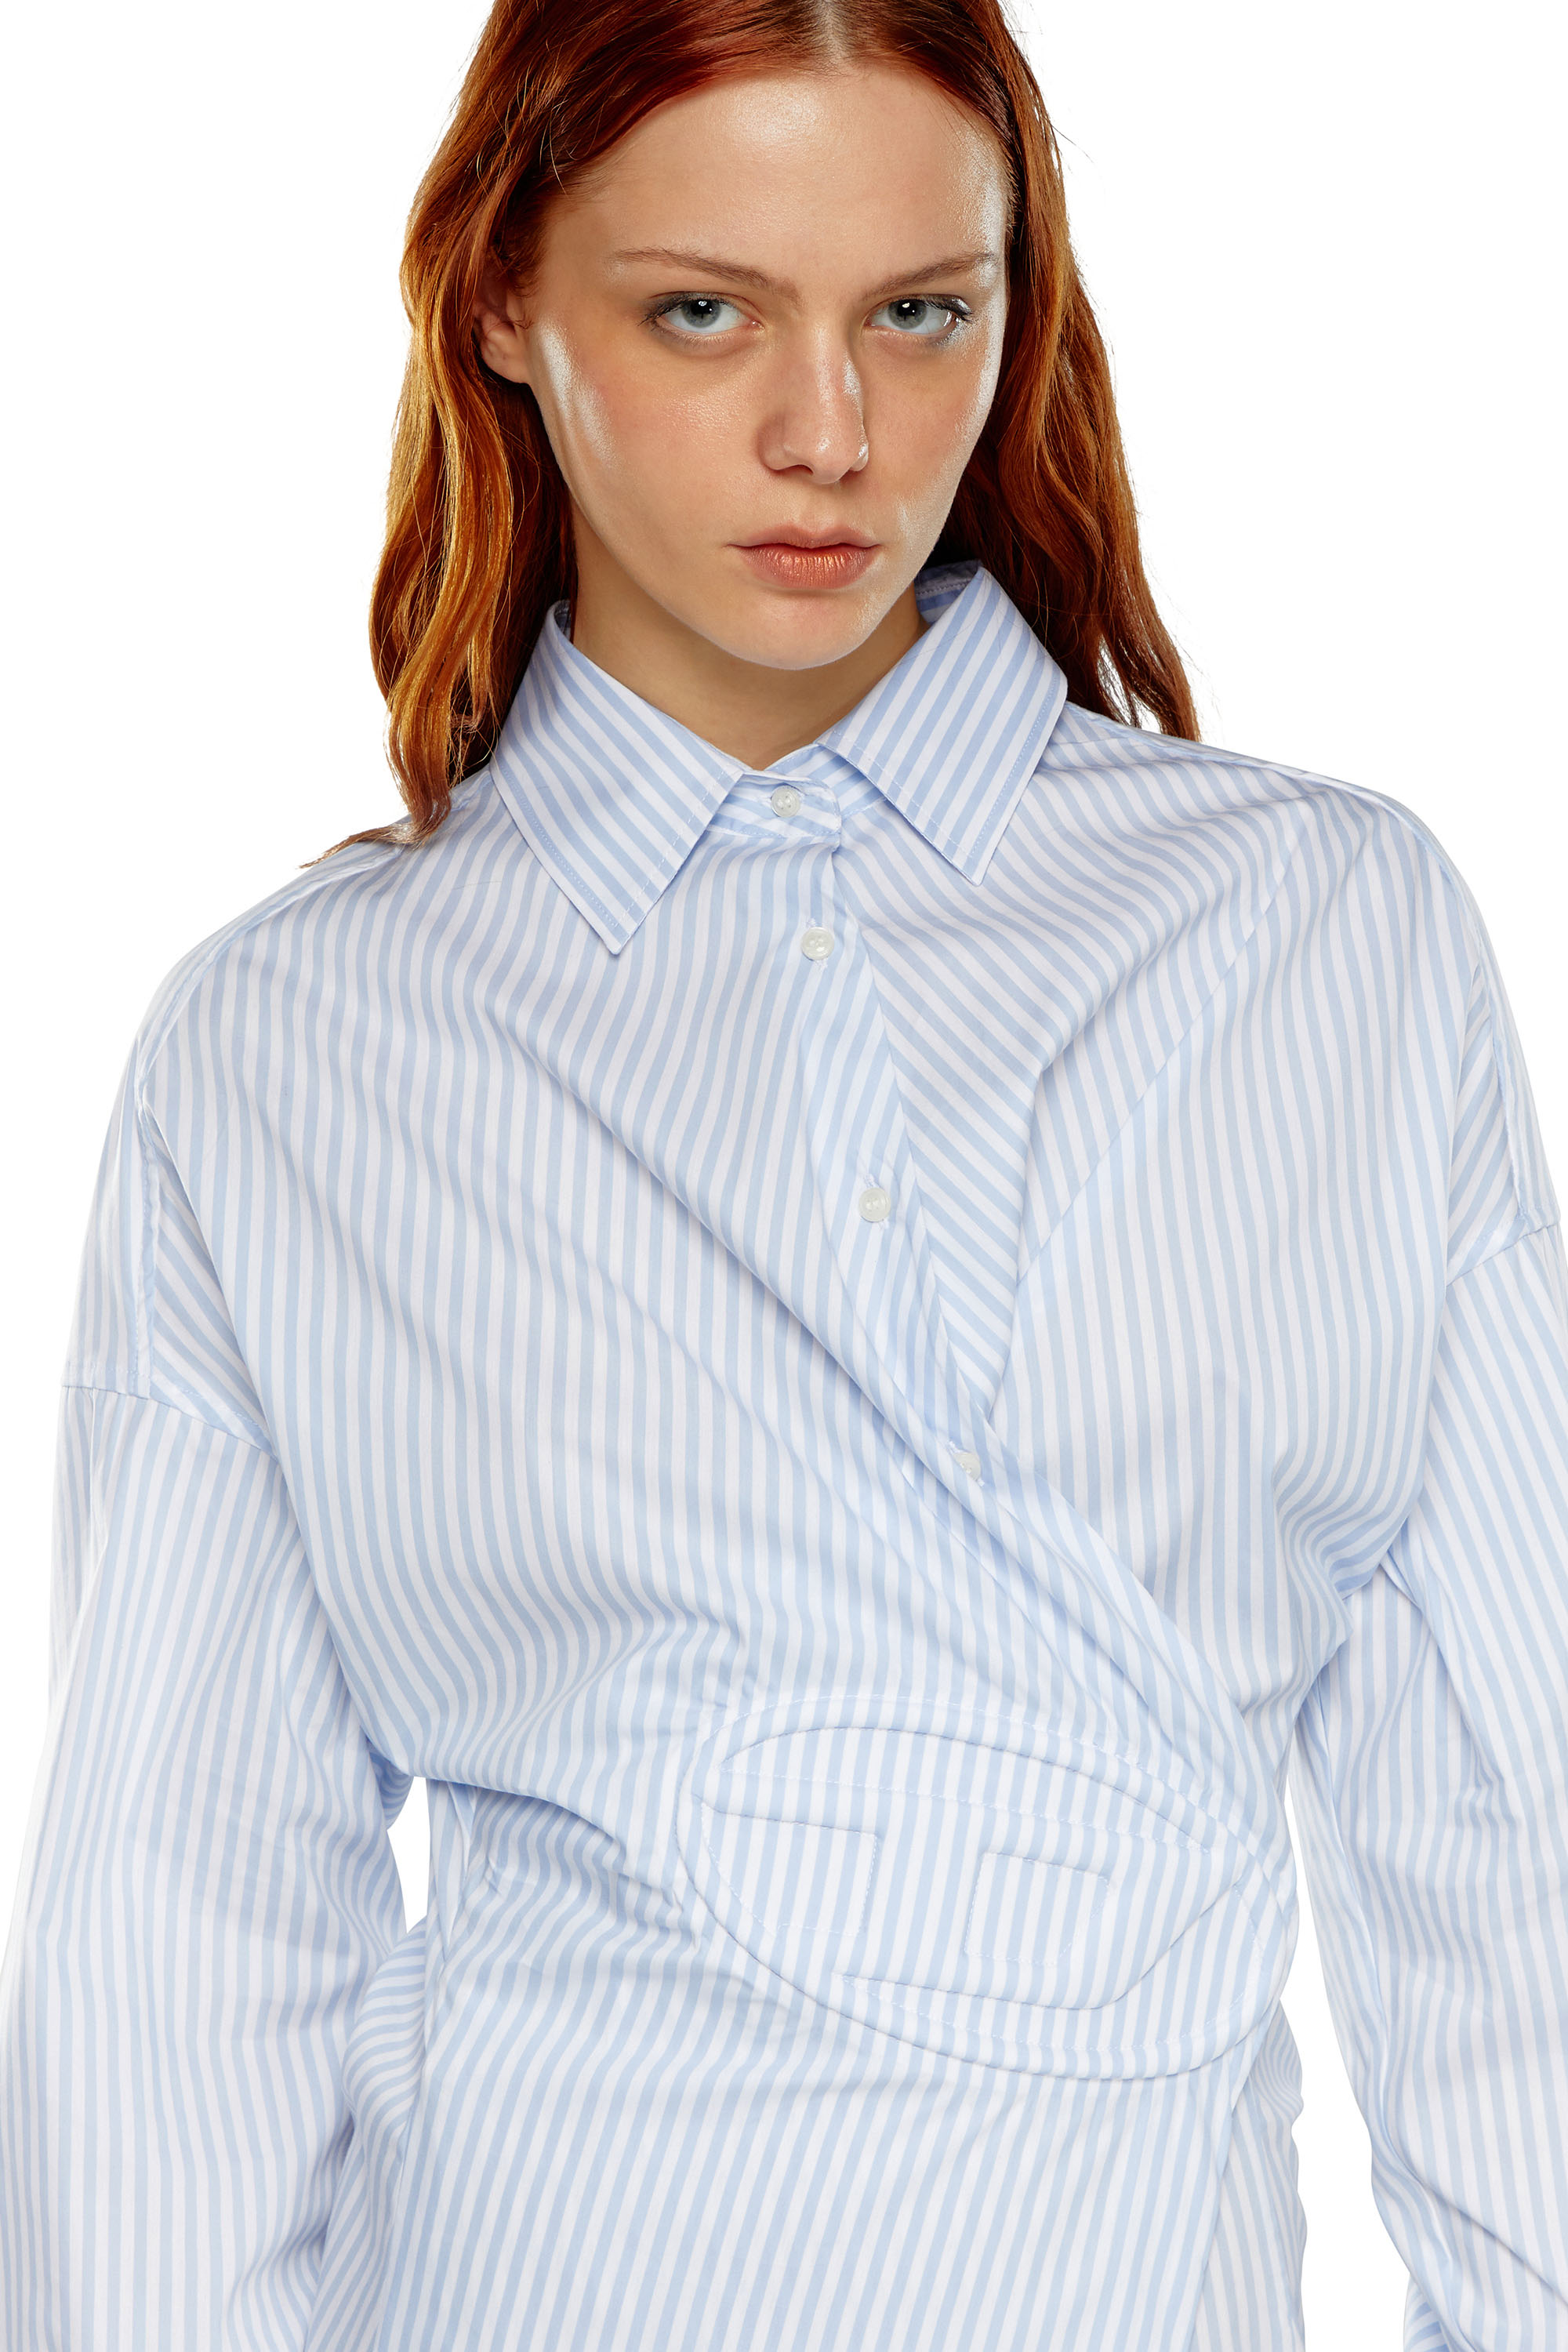 Diesel - D-SIZEN-N2, Woman Short striped shirt dress in Blue - Image 4